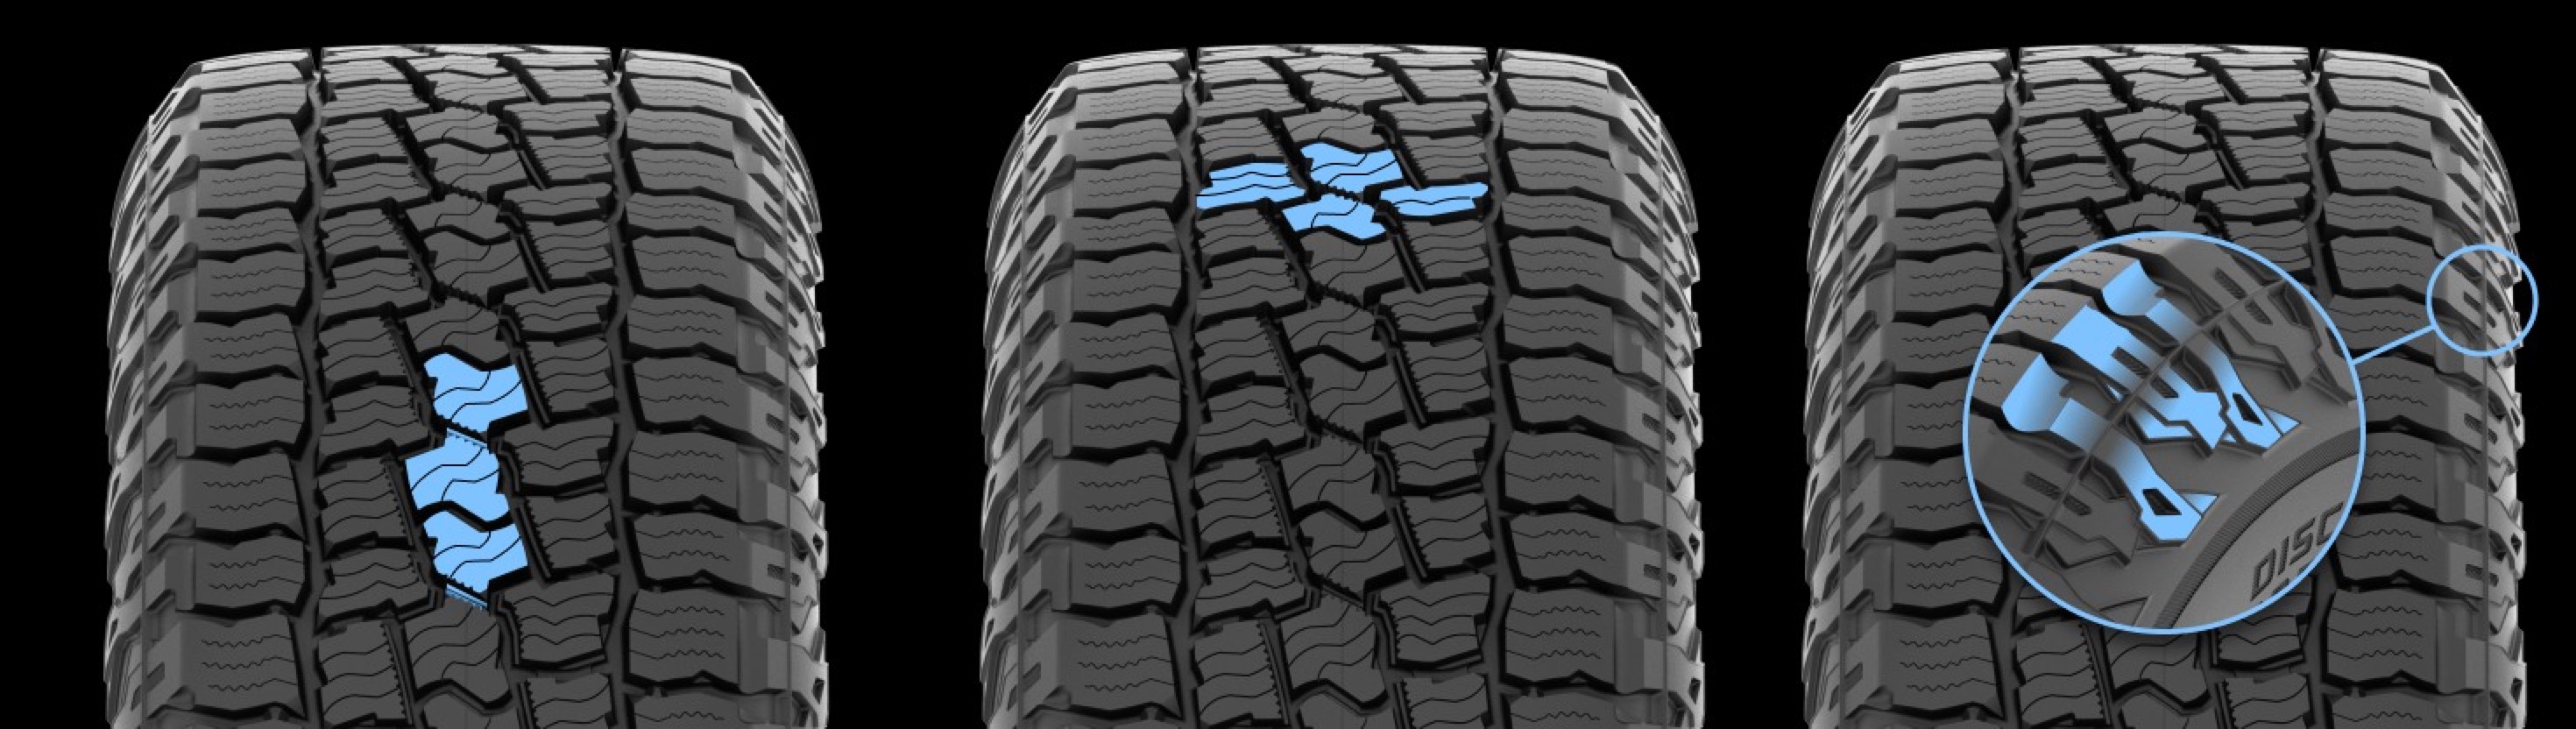 tire profiles